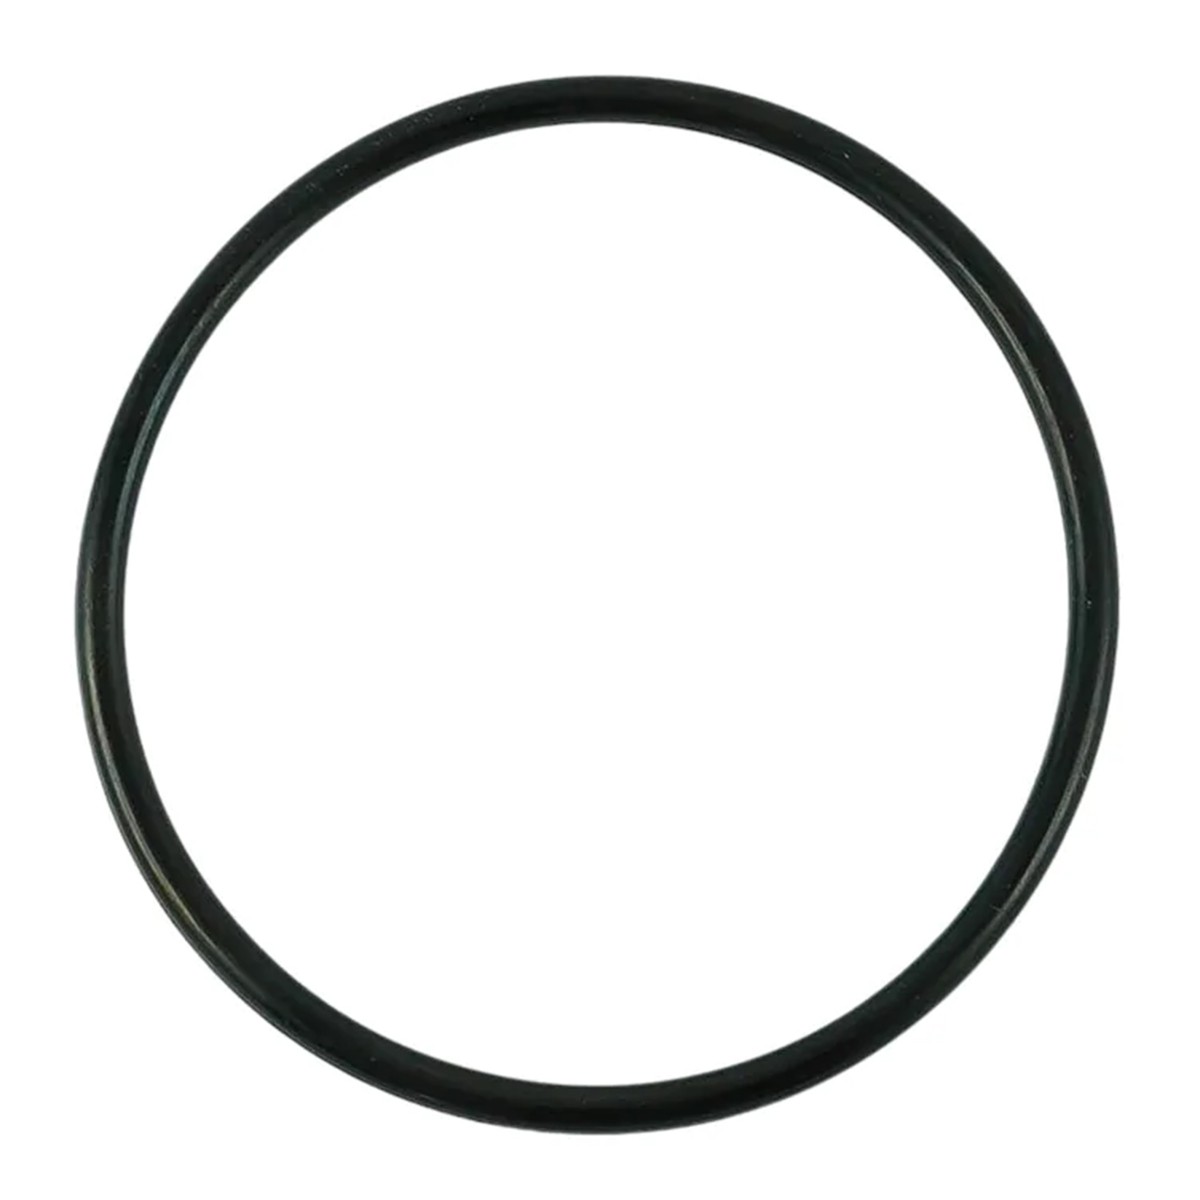 O-ring 59.40 x 3.10 mm / LS MT3.35 / LS MT3.40 / LS MT3.50 / LS MT3.60 / S802060010 / 40029225